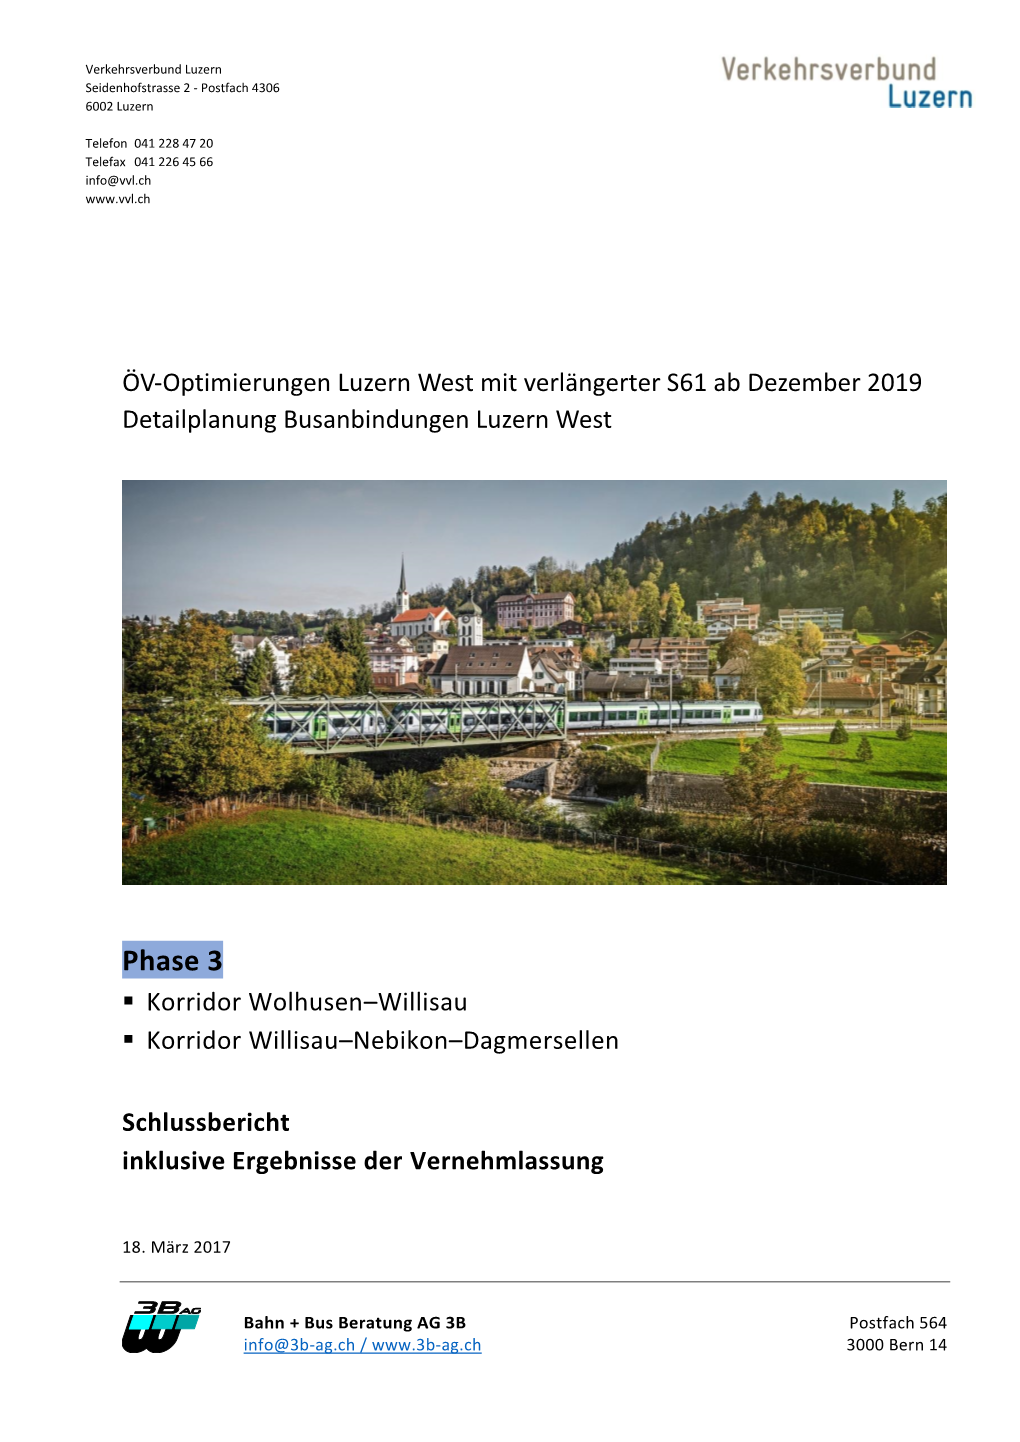 Öv-Optimierungen Luzern West Mit Verlängerter S61, Phase 3